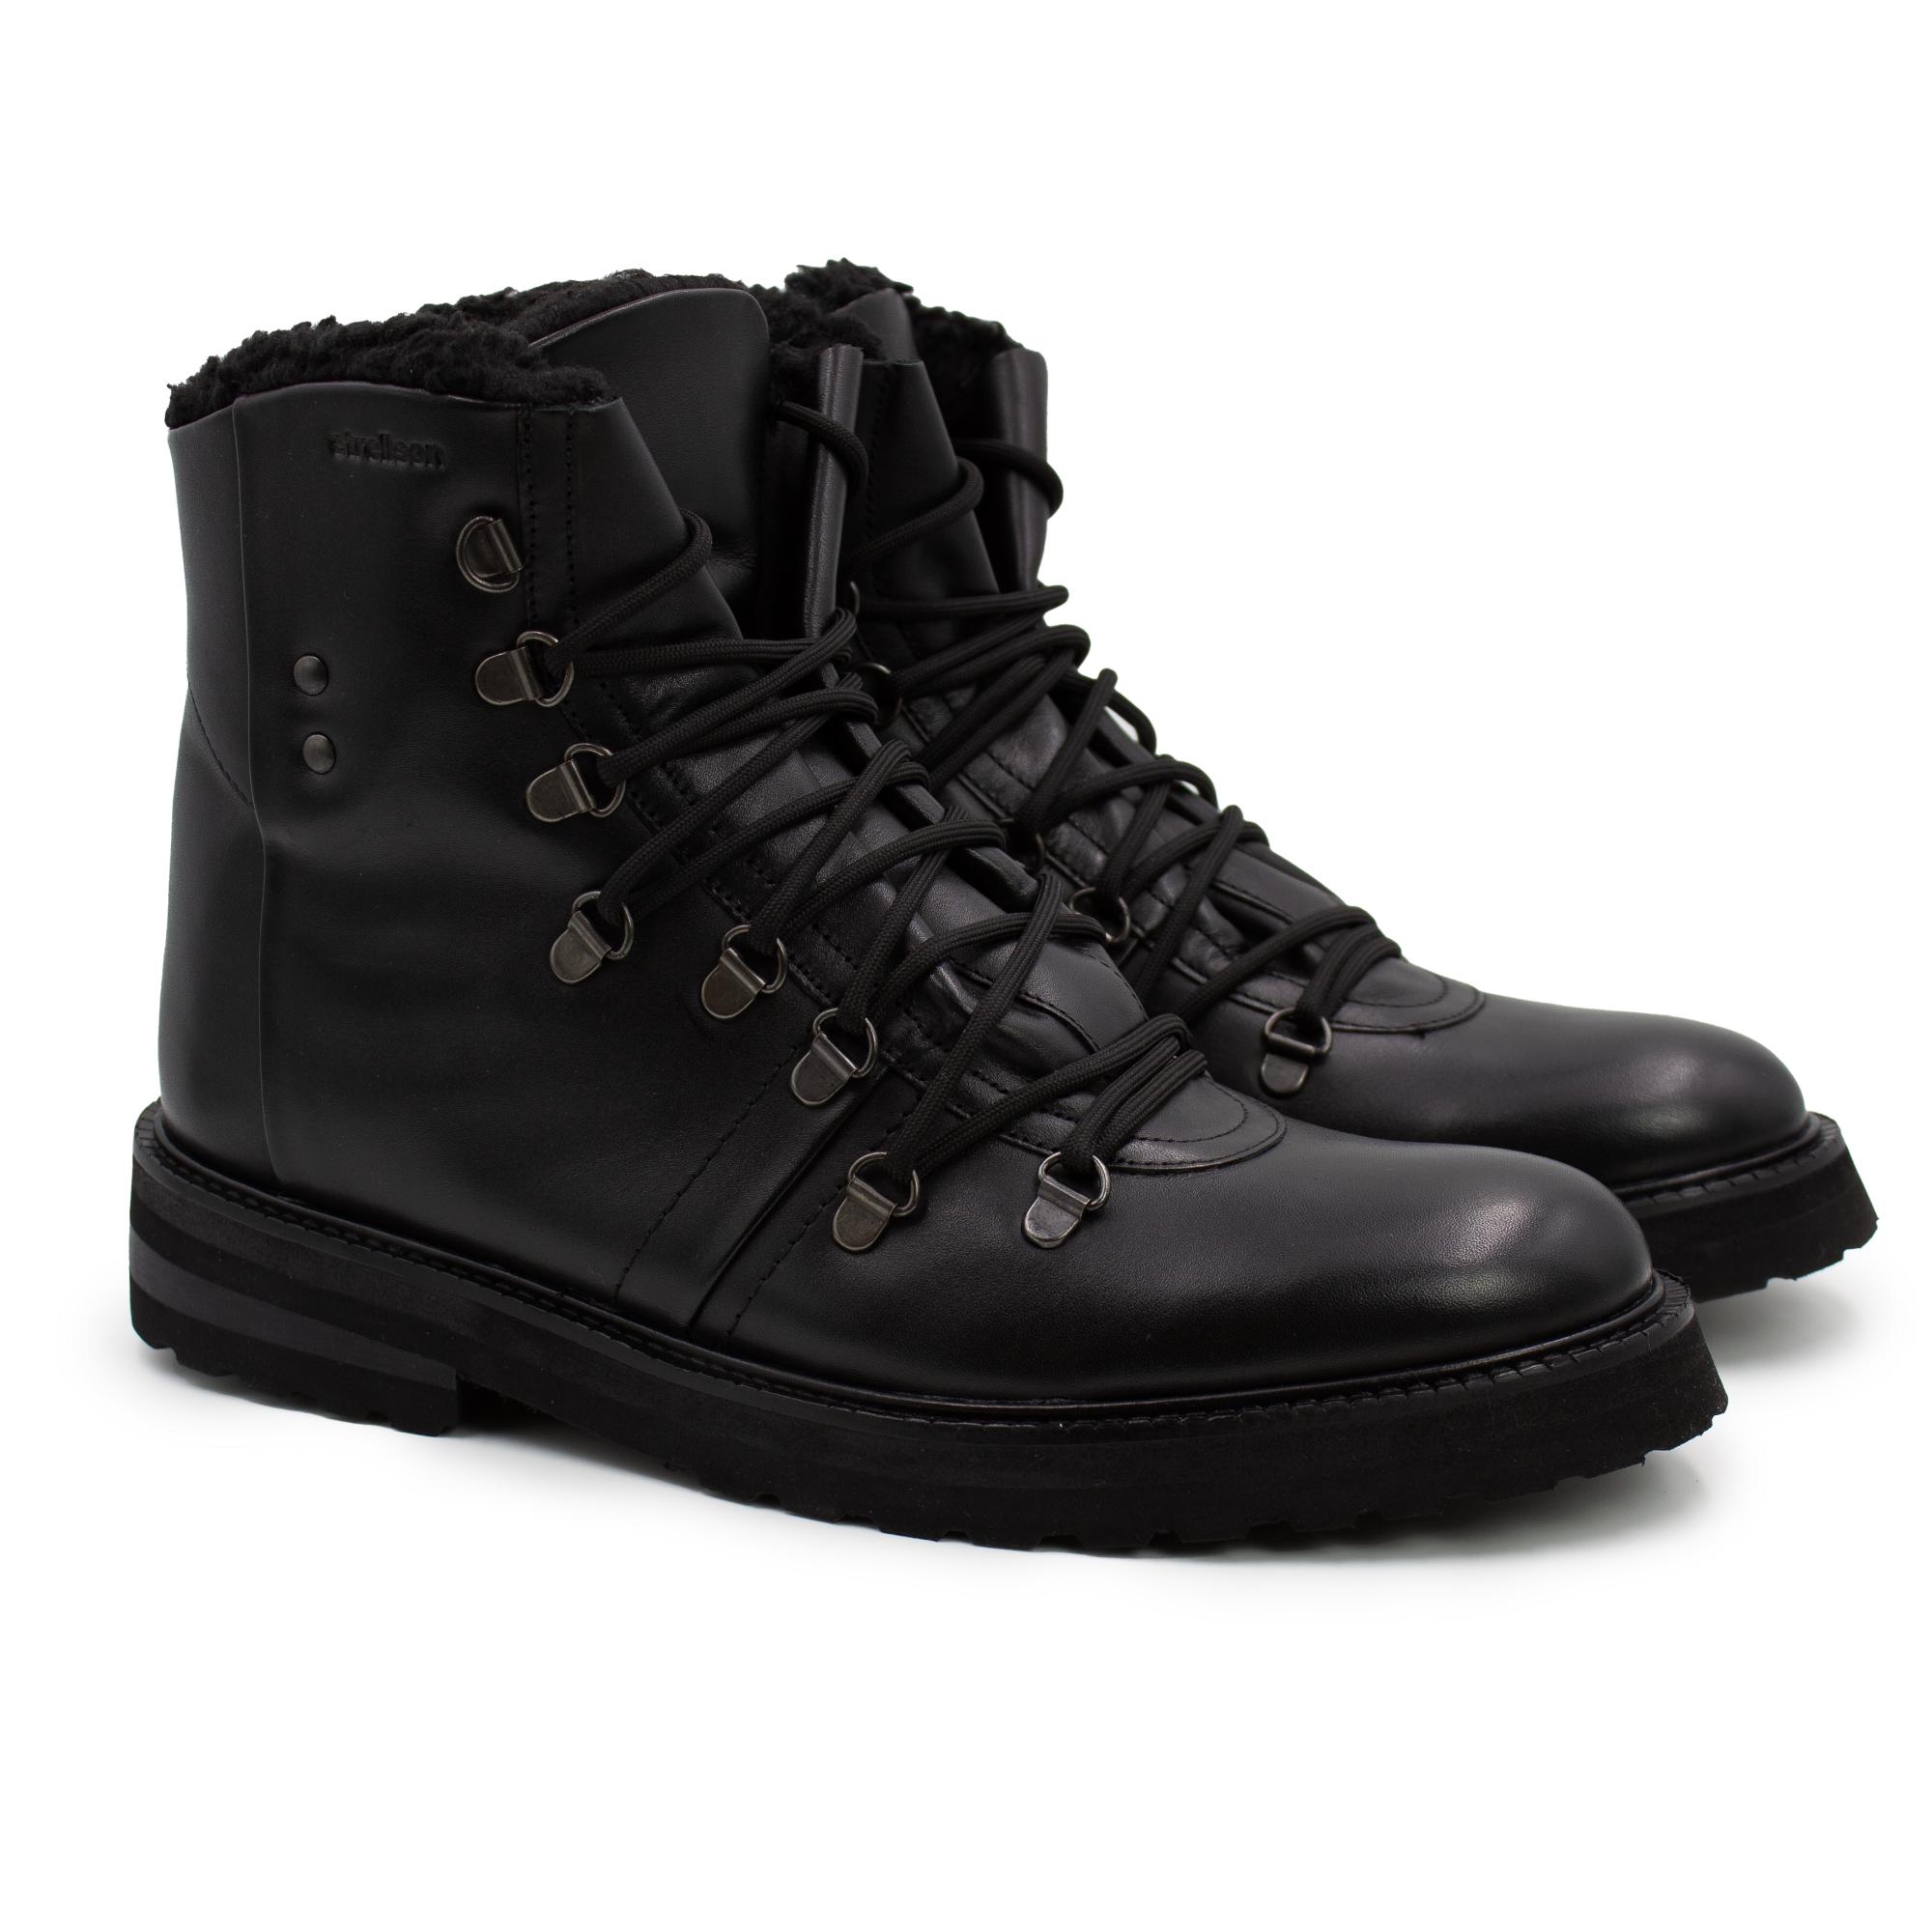 Ботинки мужские Strellson coleman nimonico boot mc8 4010002994 черные 41 EU